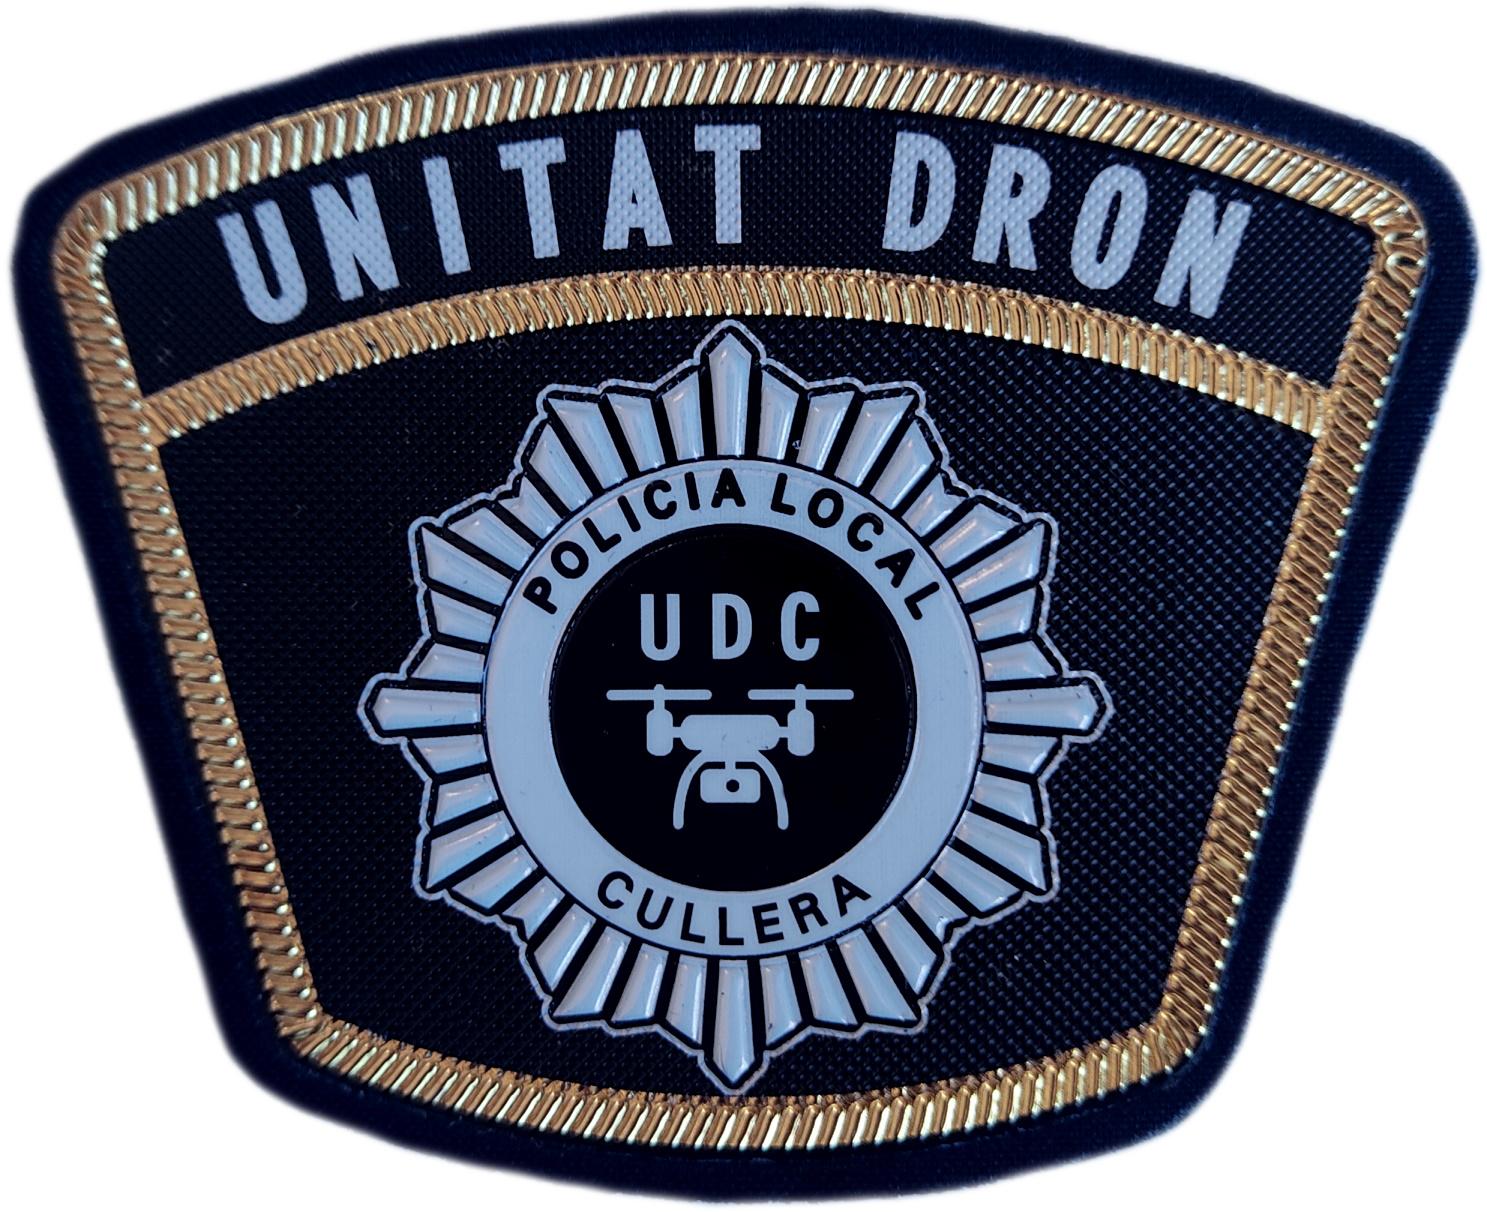 Policía Local Cullera Unidad Dron Unitat Comunidad Valenciana parche insignia emblema distintivo